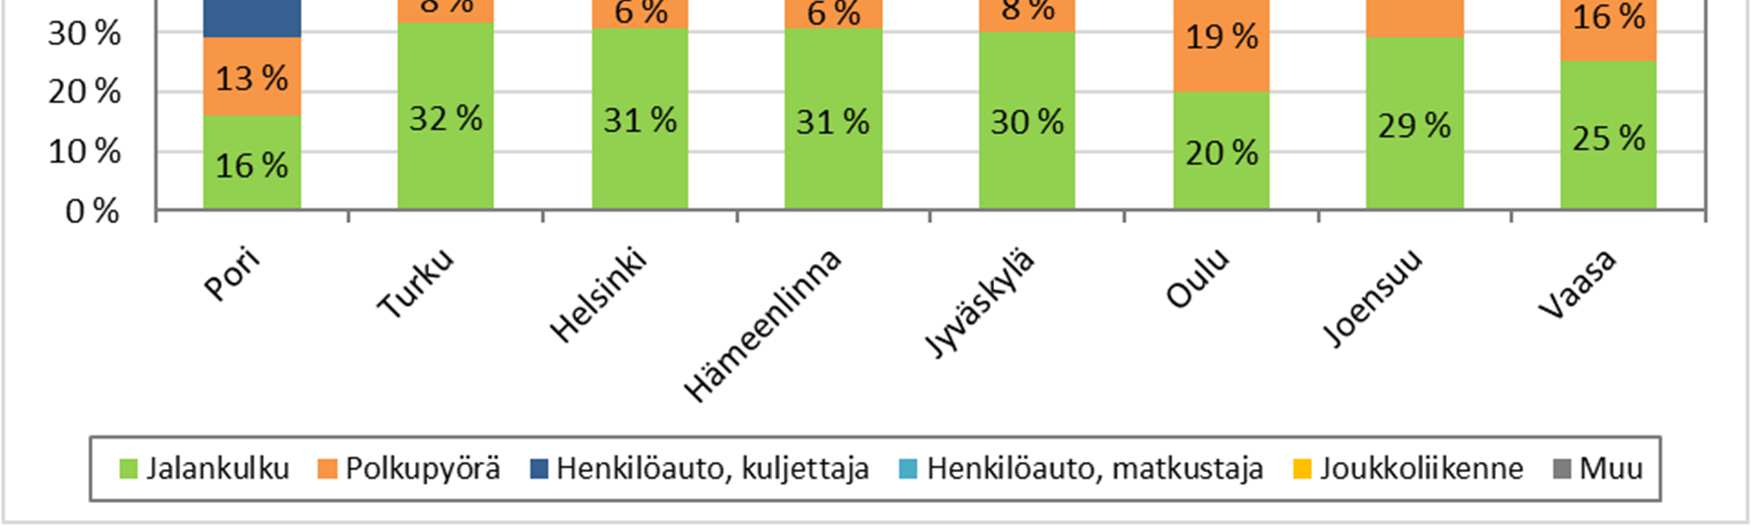 62 Kuvassa 35 on esitetty Porin kulkutapajakauma verrattuna sellaisiin suomalaisiin kaupunkeihin, joissa joko 1) jalankulun kulkutapaosuus on vähintään 30 % tai 2) pyöräilyn kulkutapaosuus on